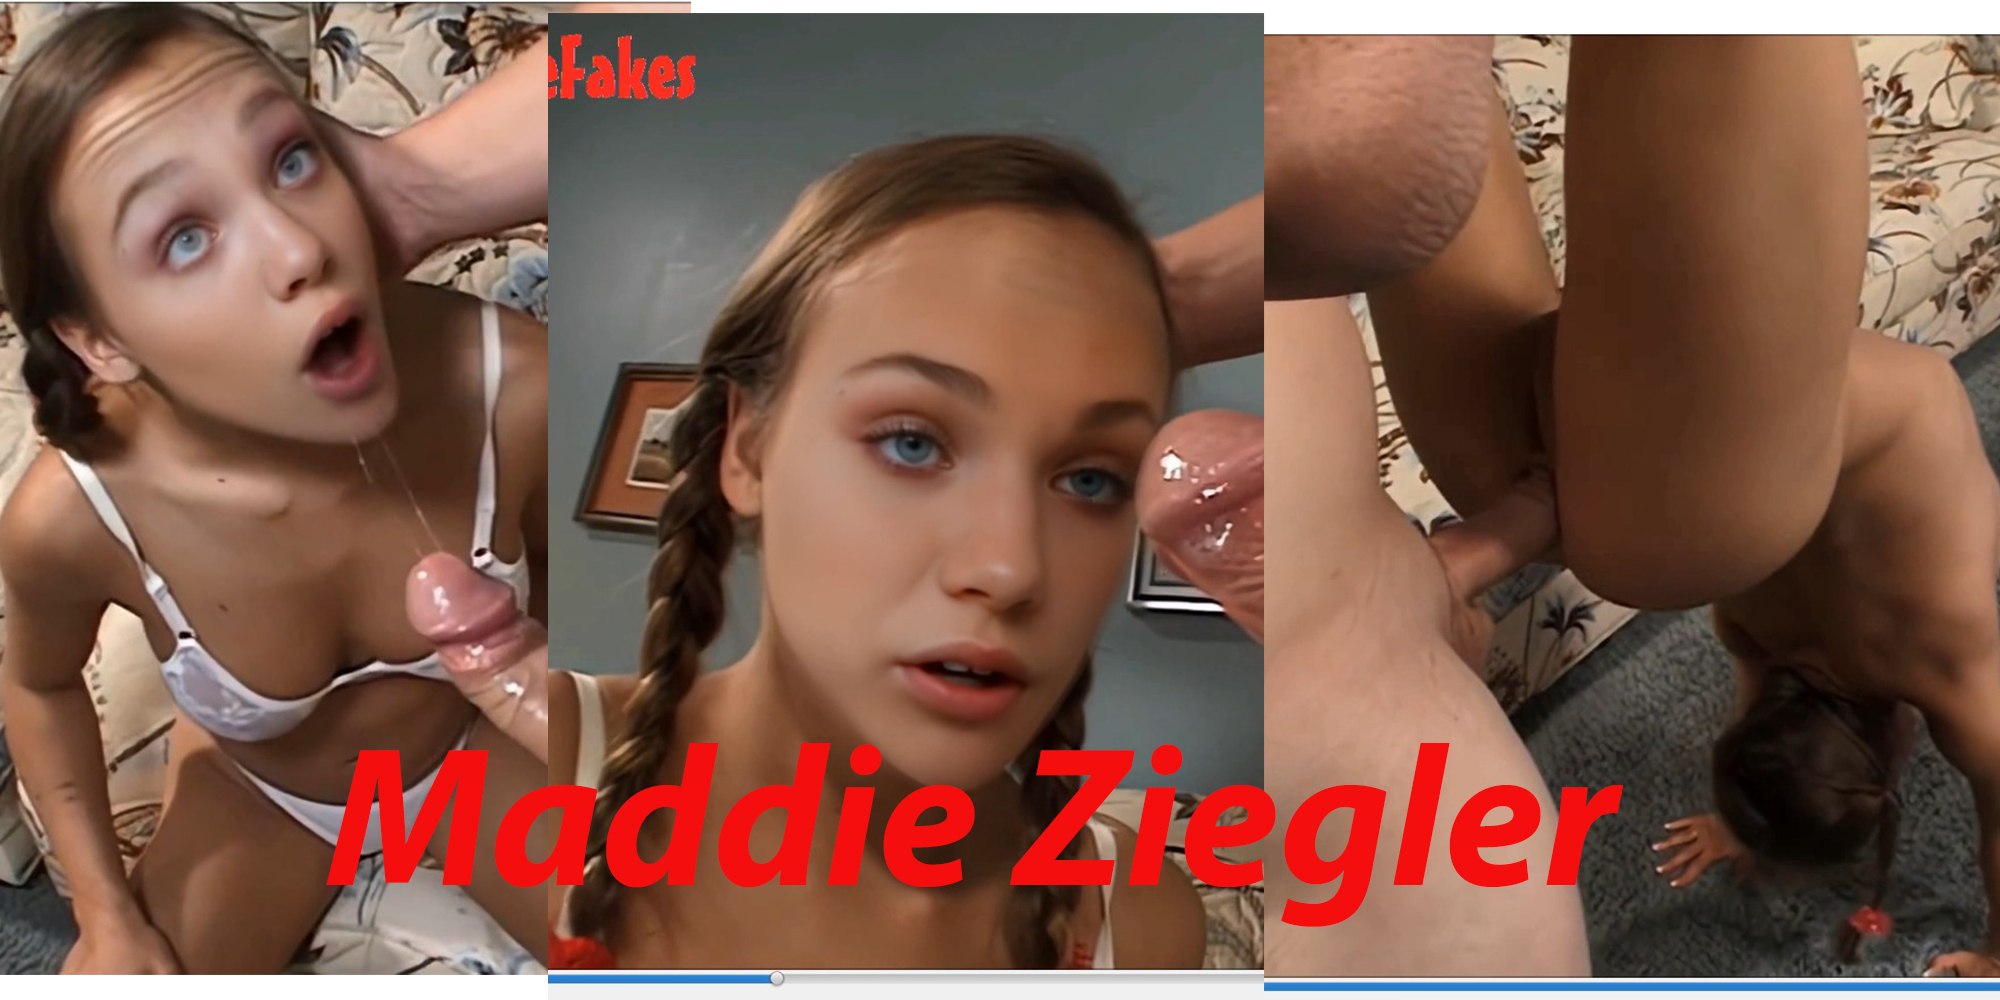 Maddie ziegler nude fakes